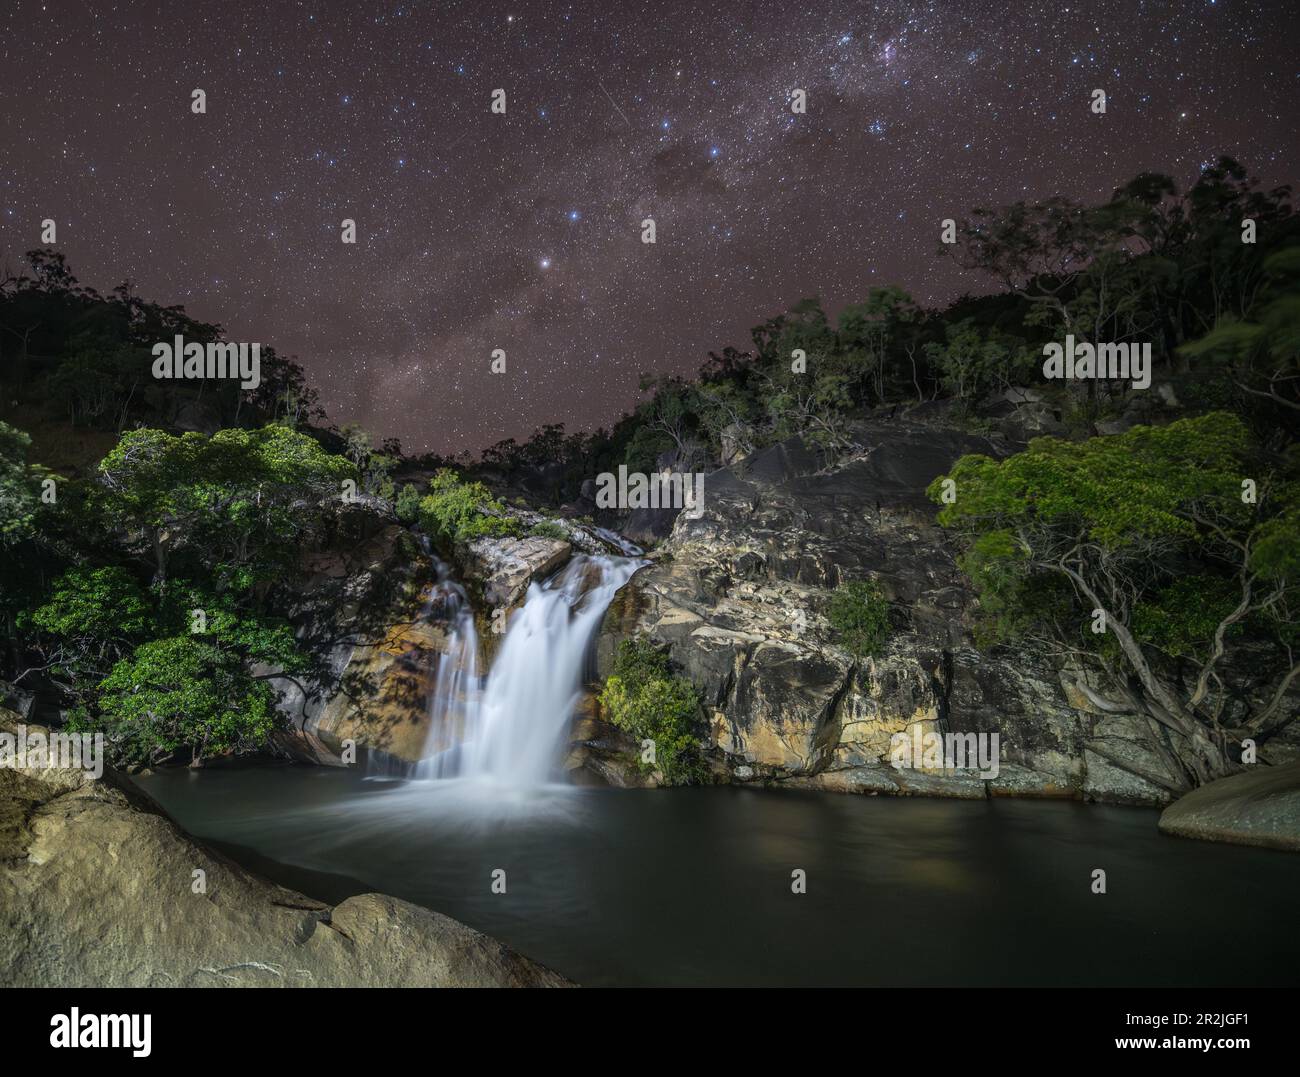 Ein atemberaubendes Nachtbild der Emerald Creek Falls, durchquert von der Milchstraße in einer klaren Nacht in Mareeba, Queensland, Australien. Stockfoto